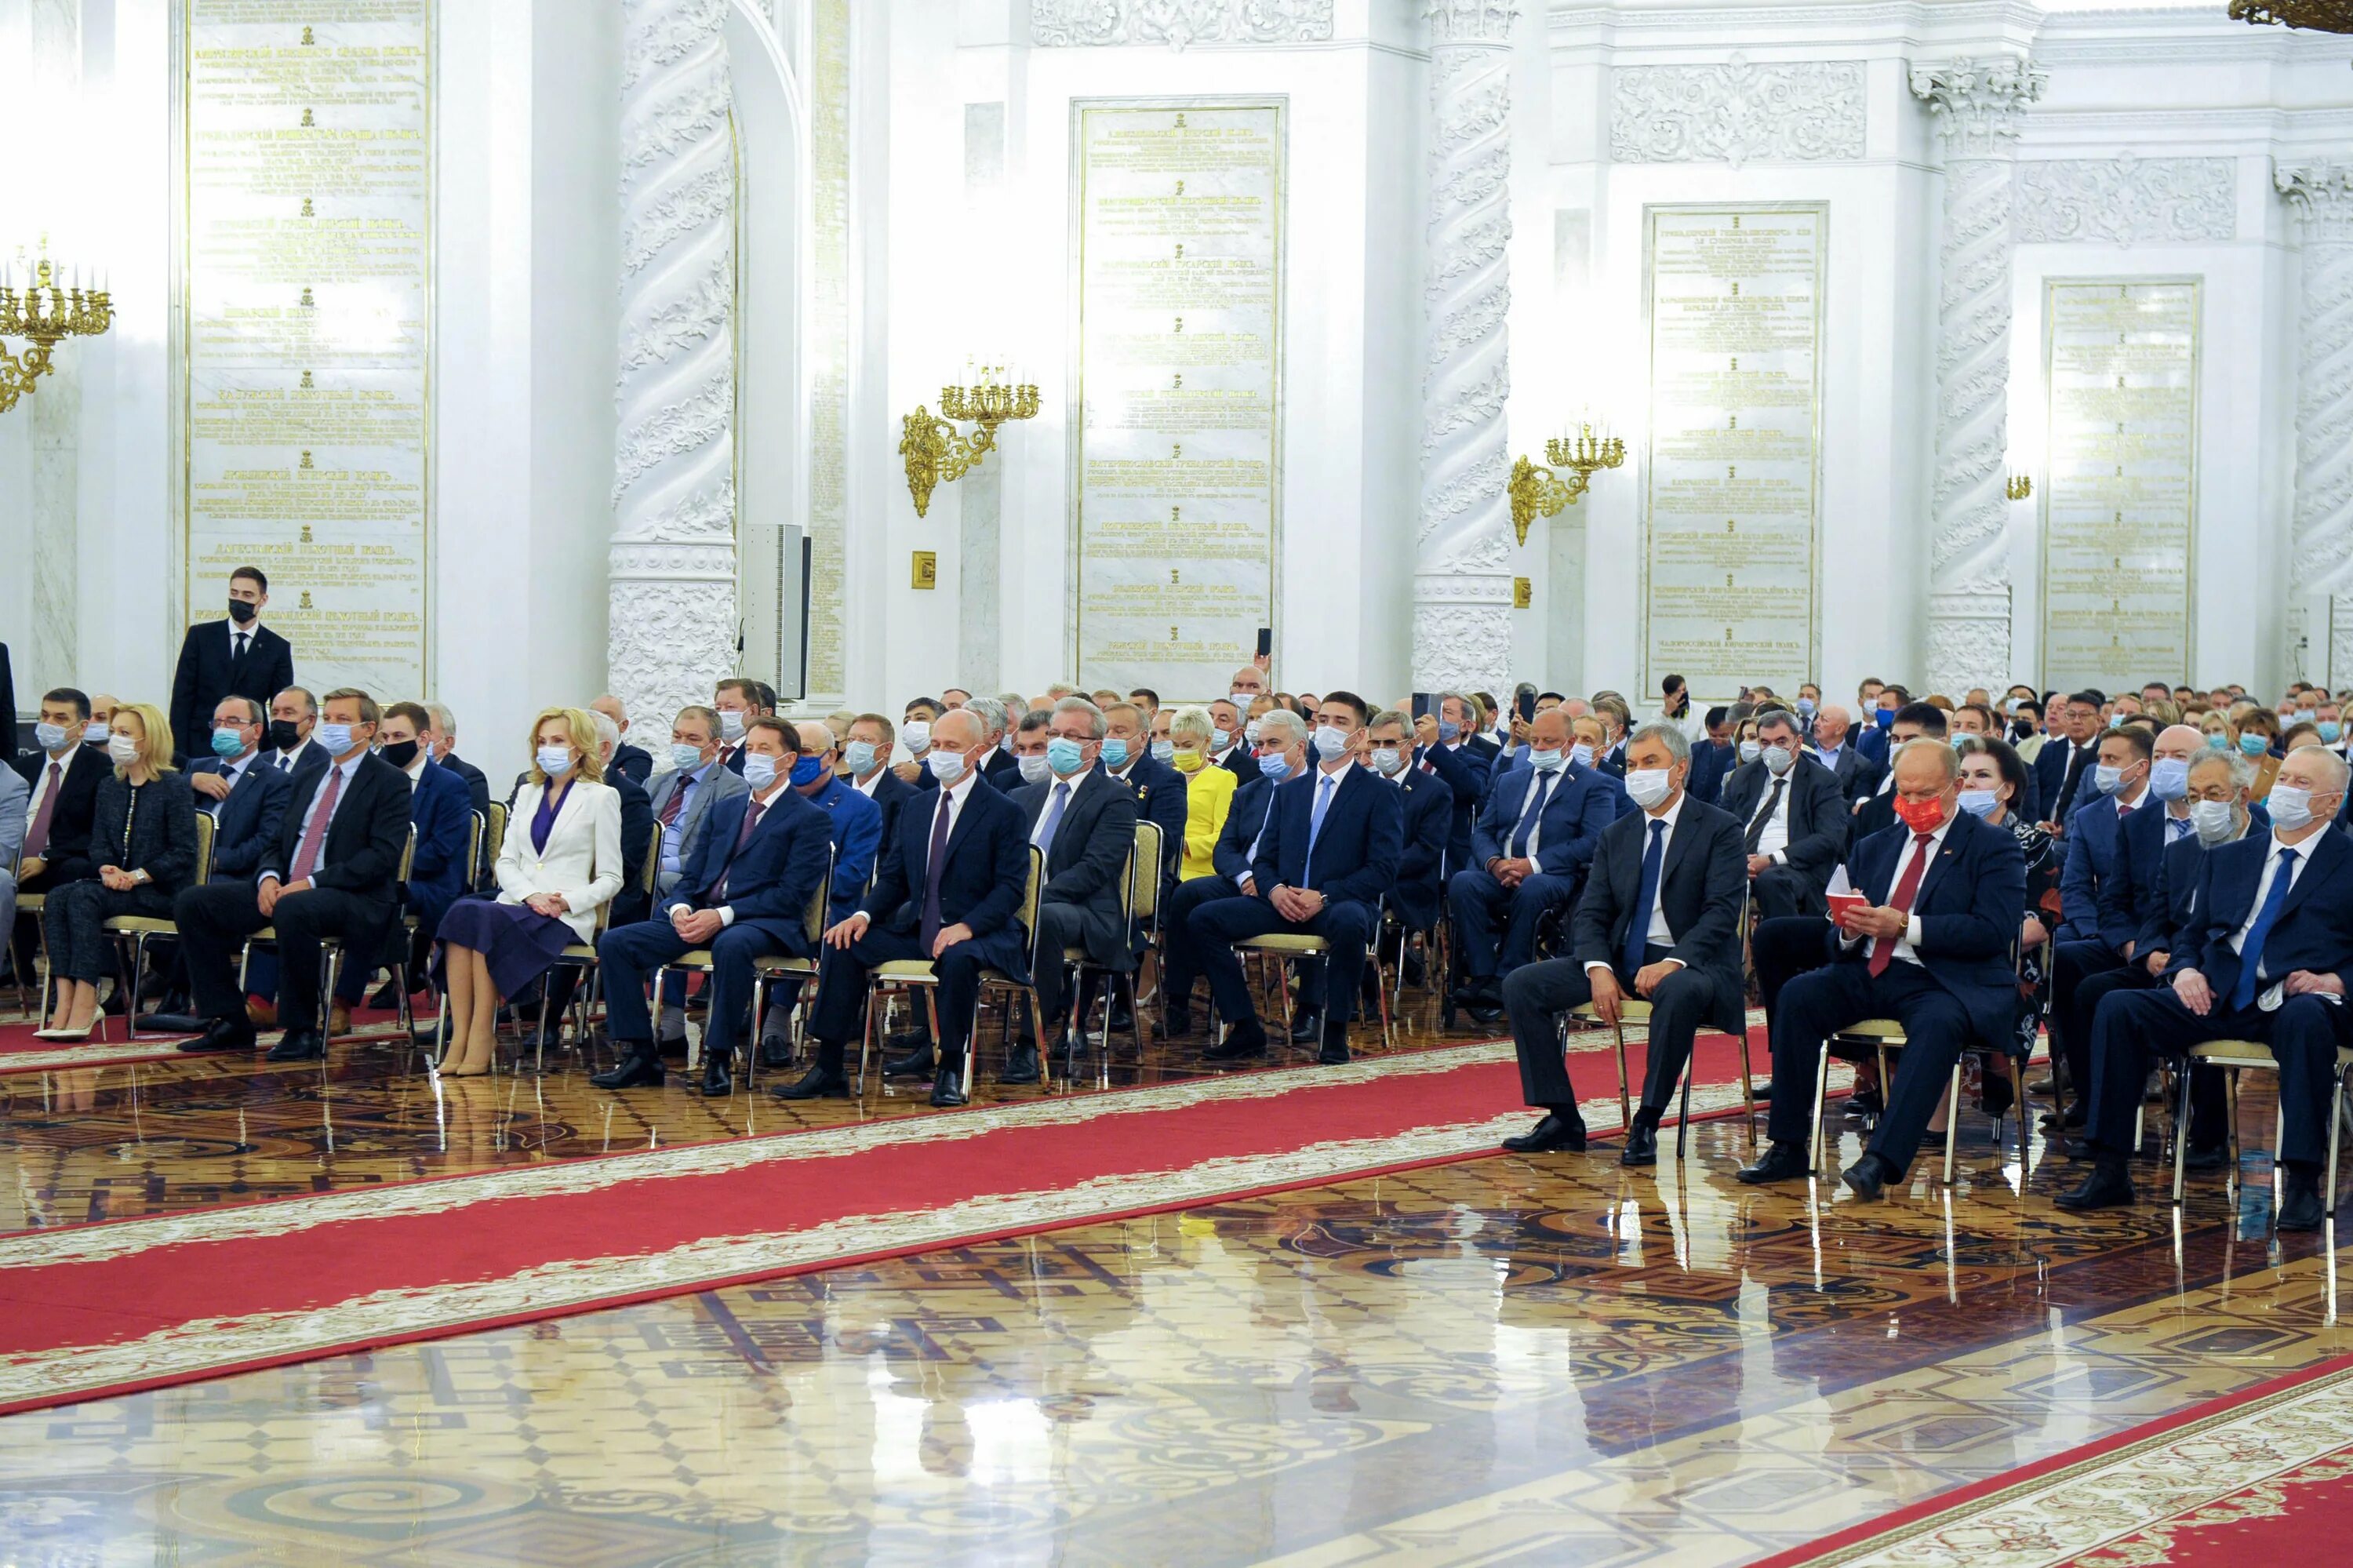 Георгиевский зал кремлевского дворца. Георгиевский зал Кремля встреча с президентом.